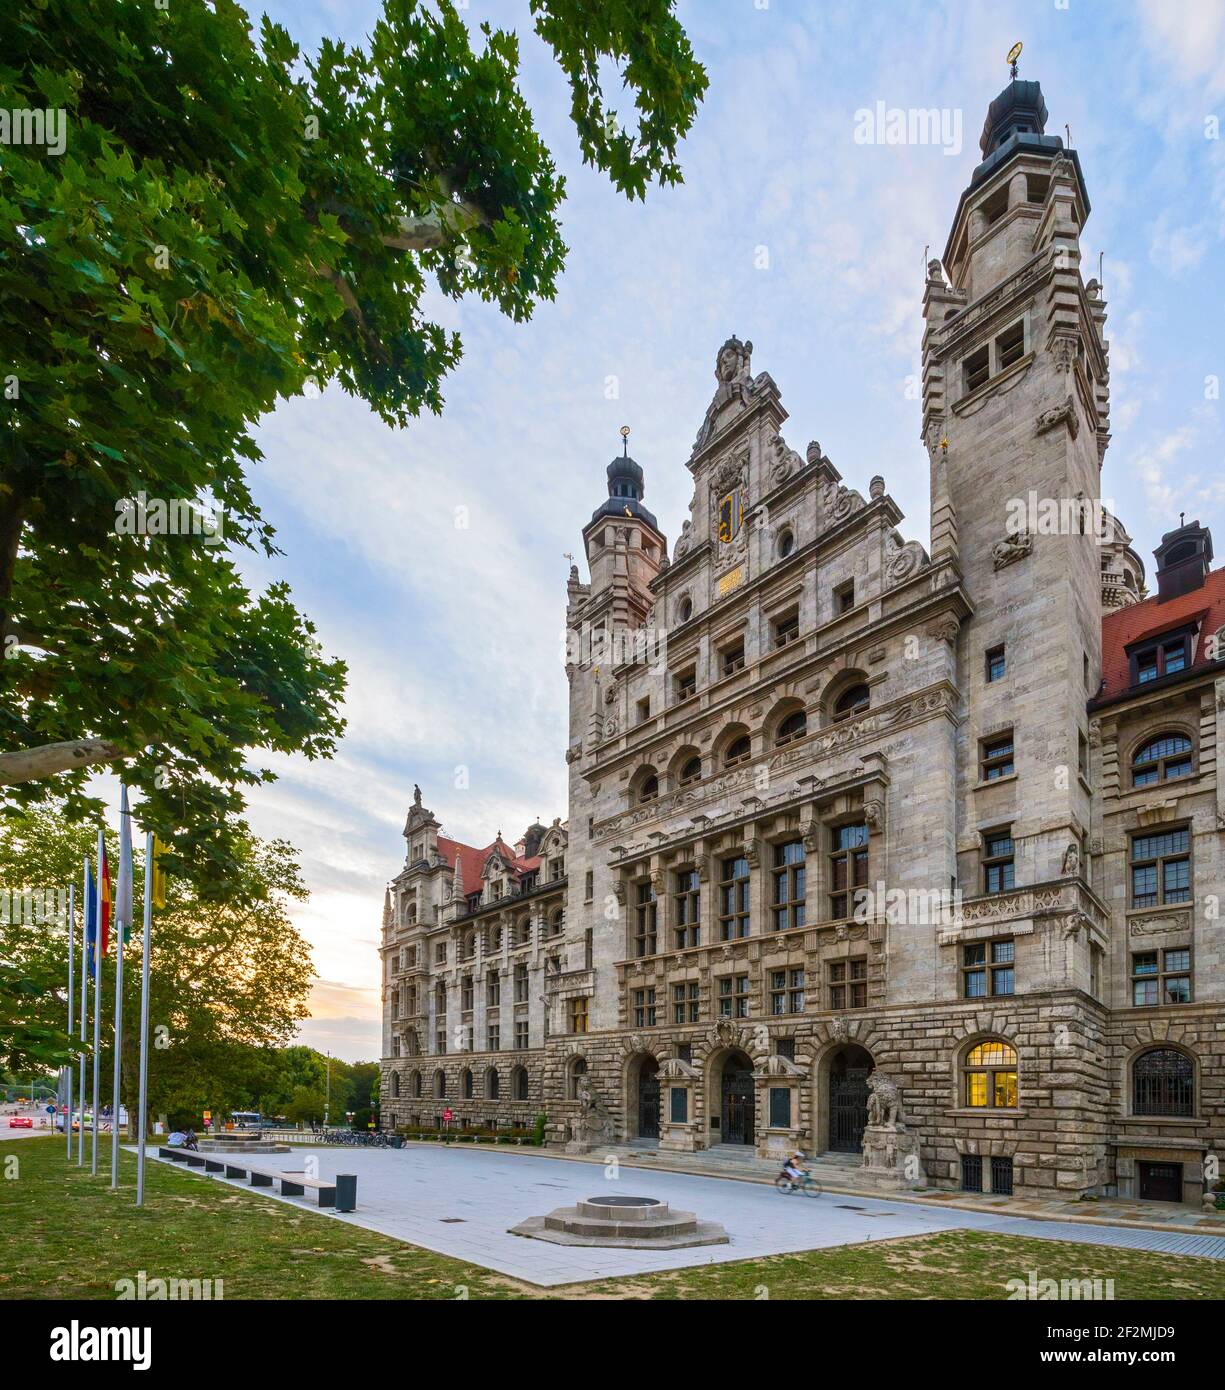 Leipzig, das Neue Rathaus ist seit 1905 Sitz der Stadtverwaltung. Der 114,7 Meter hohe Rathausturm ist der höchste Rathausturm Deutschlands und eines der Wahrzeichen der Stadt. Es kann im Rahmen einer geführten Tour bestiegen werden. Stockfoto